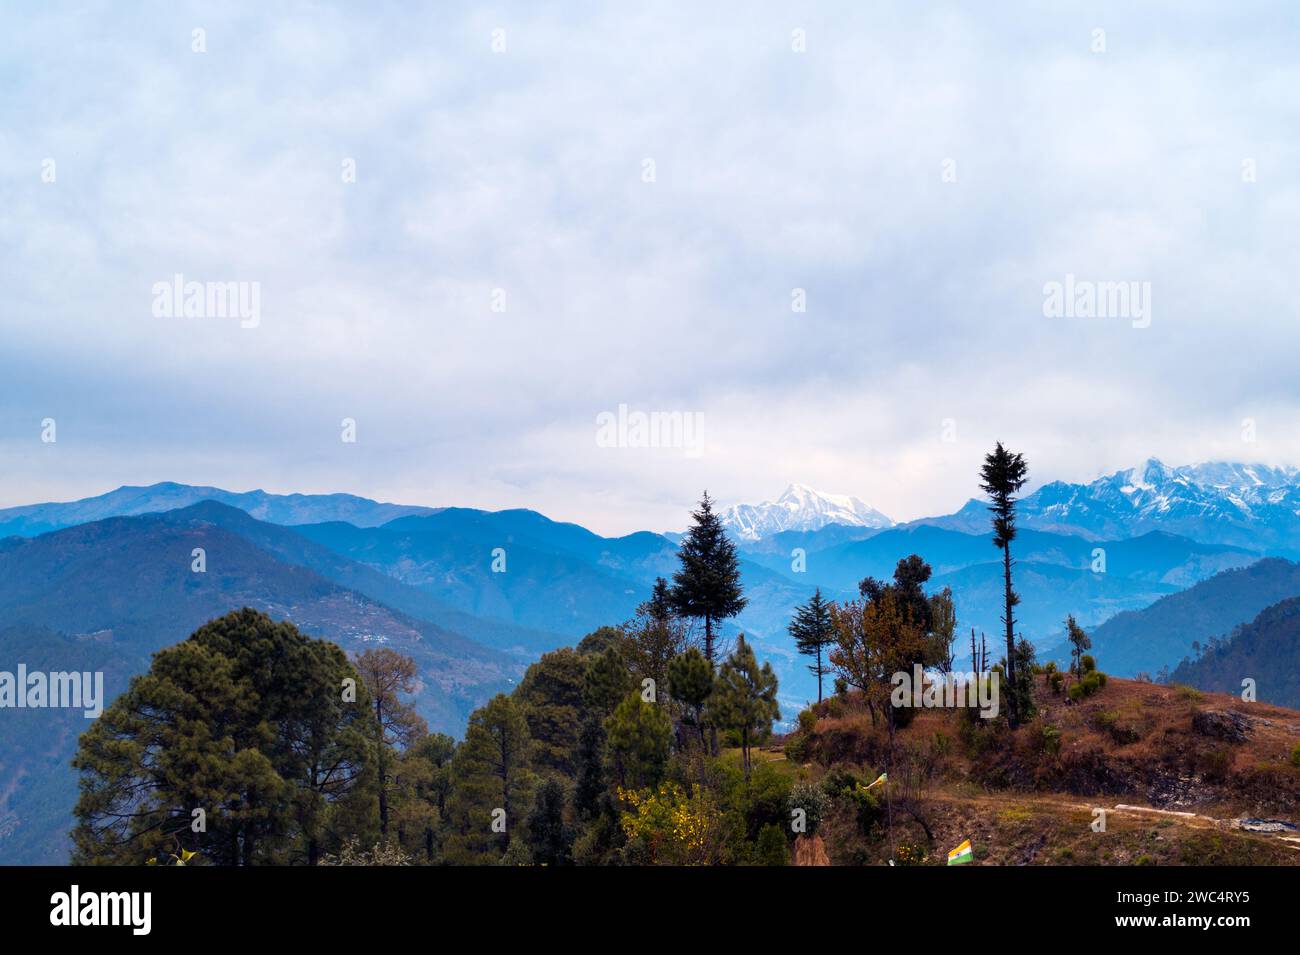 Berggipfel in den Bergen. Panoramablick auf die schneebedeckten Bergketten des Himalaya und den Nanda Devi Gipfel. Kausani, Uttarakhand, Indien. Stockfoto